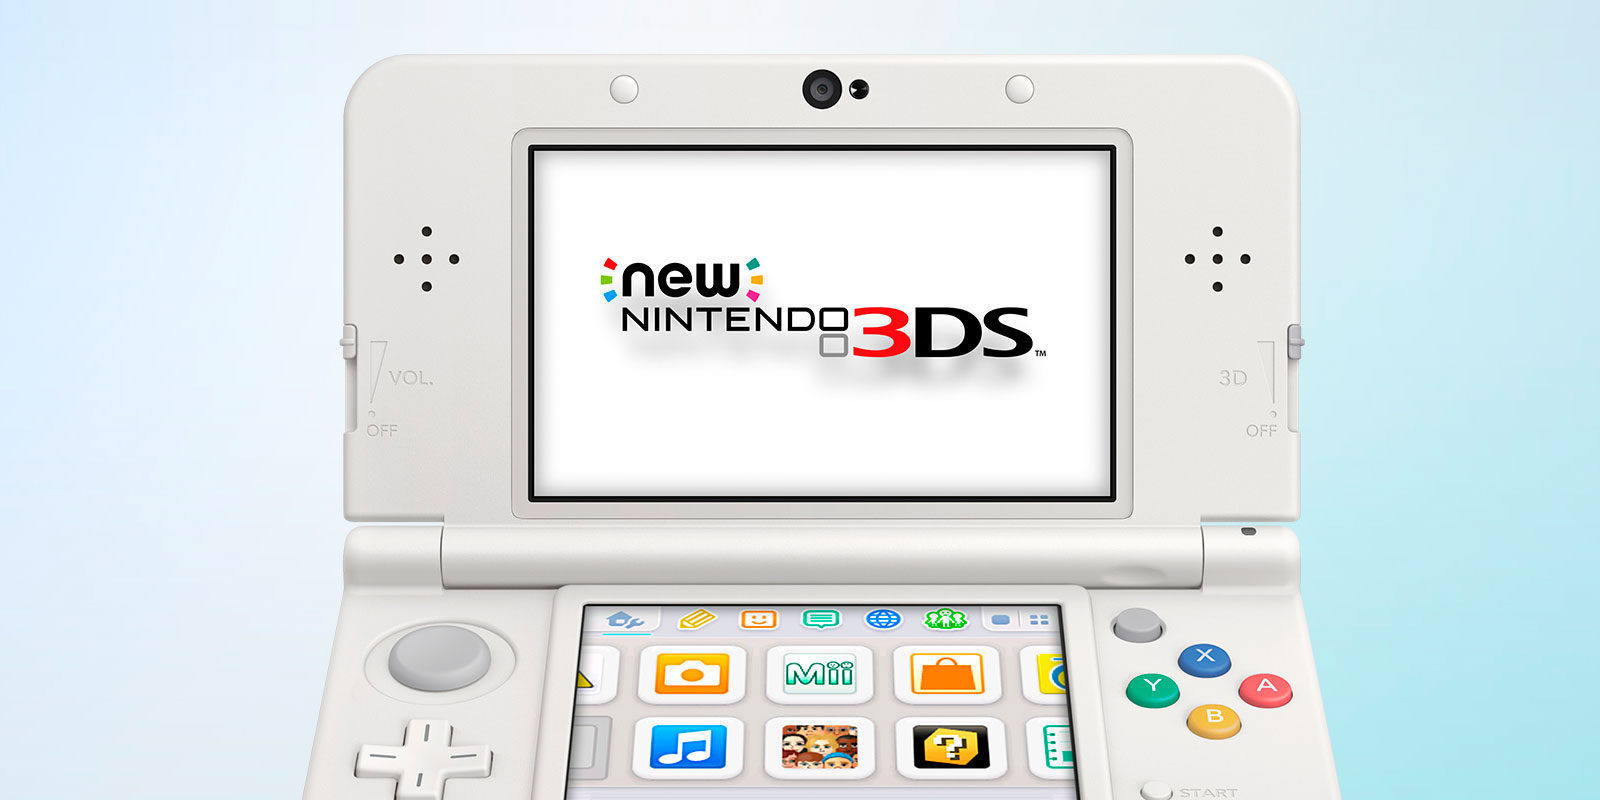 Nintendo 3DS también disfruta de buena salud y va camino de vender más que el año pasado